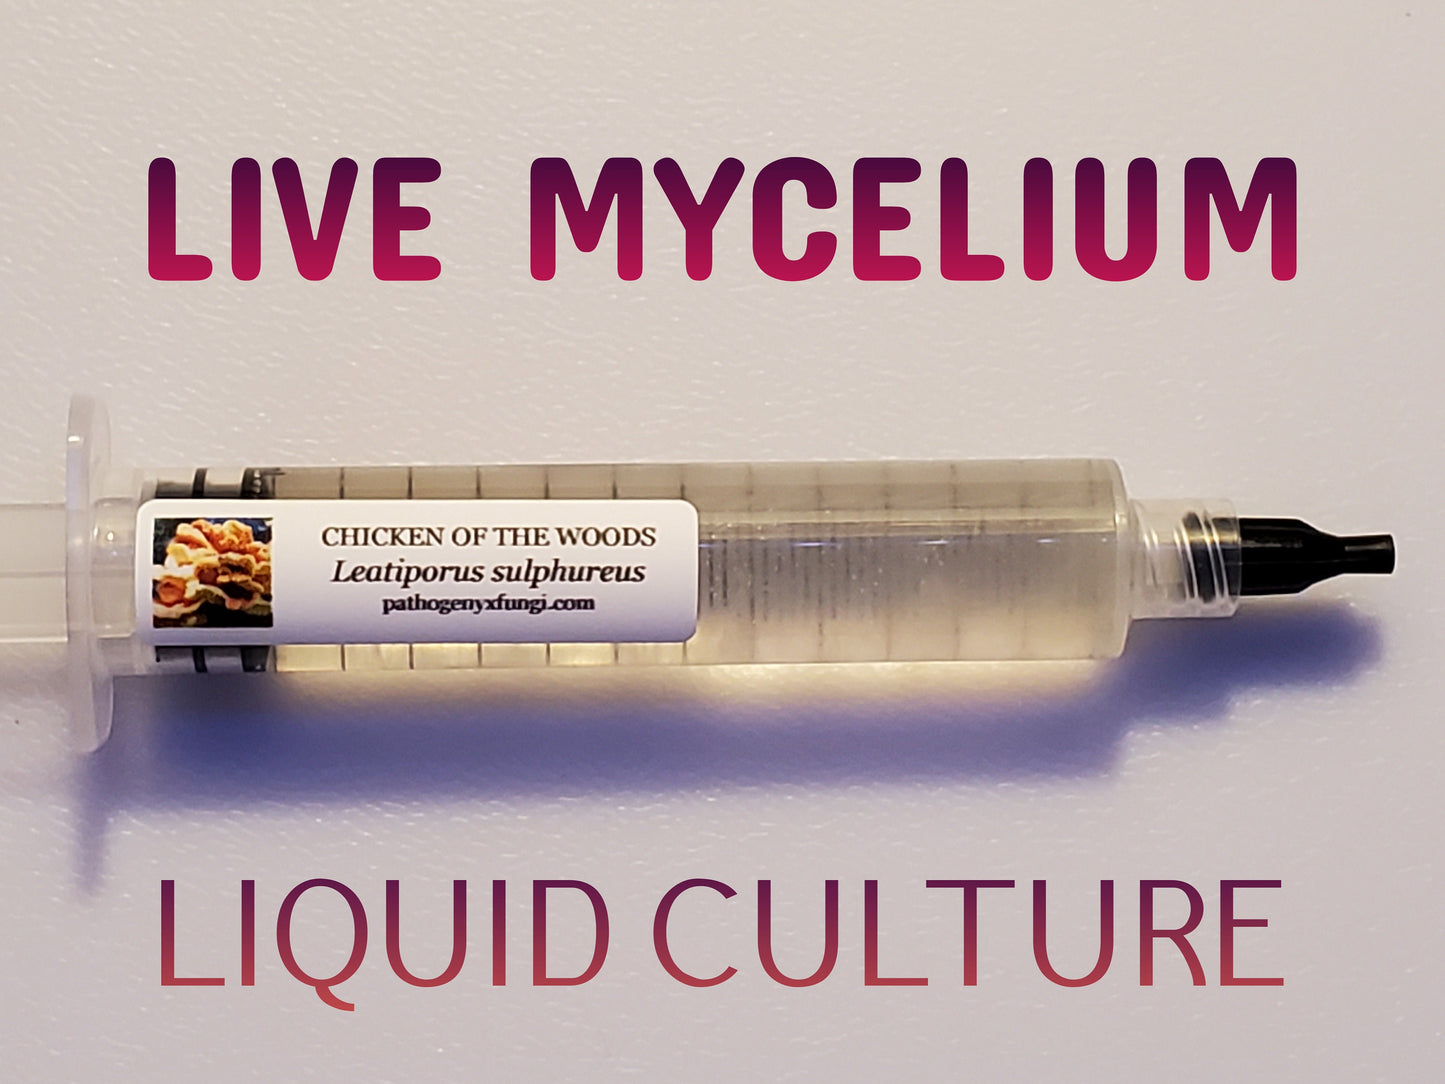 CHICKEN of the WOODS Mushroom, liquid culture syringe, Premium Mycelium™